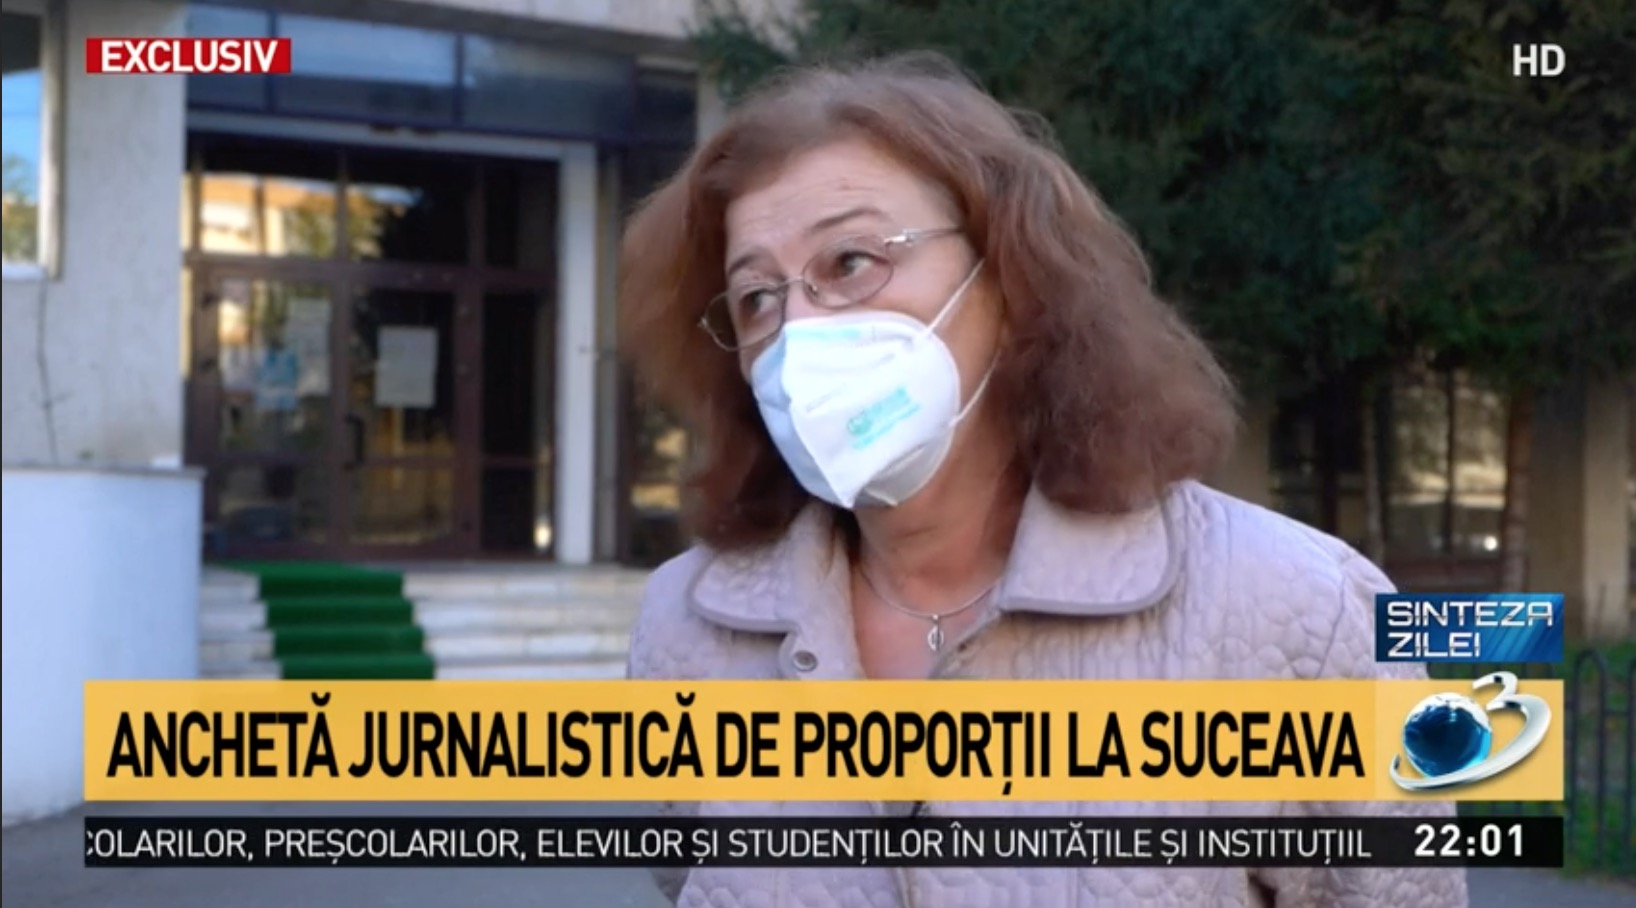 ANCHETĂ Antena 3 la Spitalul Suceava, epidemiolog: Nu credeam că o să vad în 2020 așa ceva